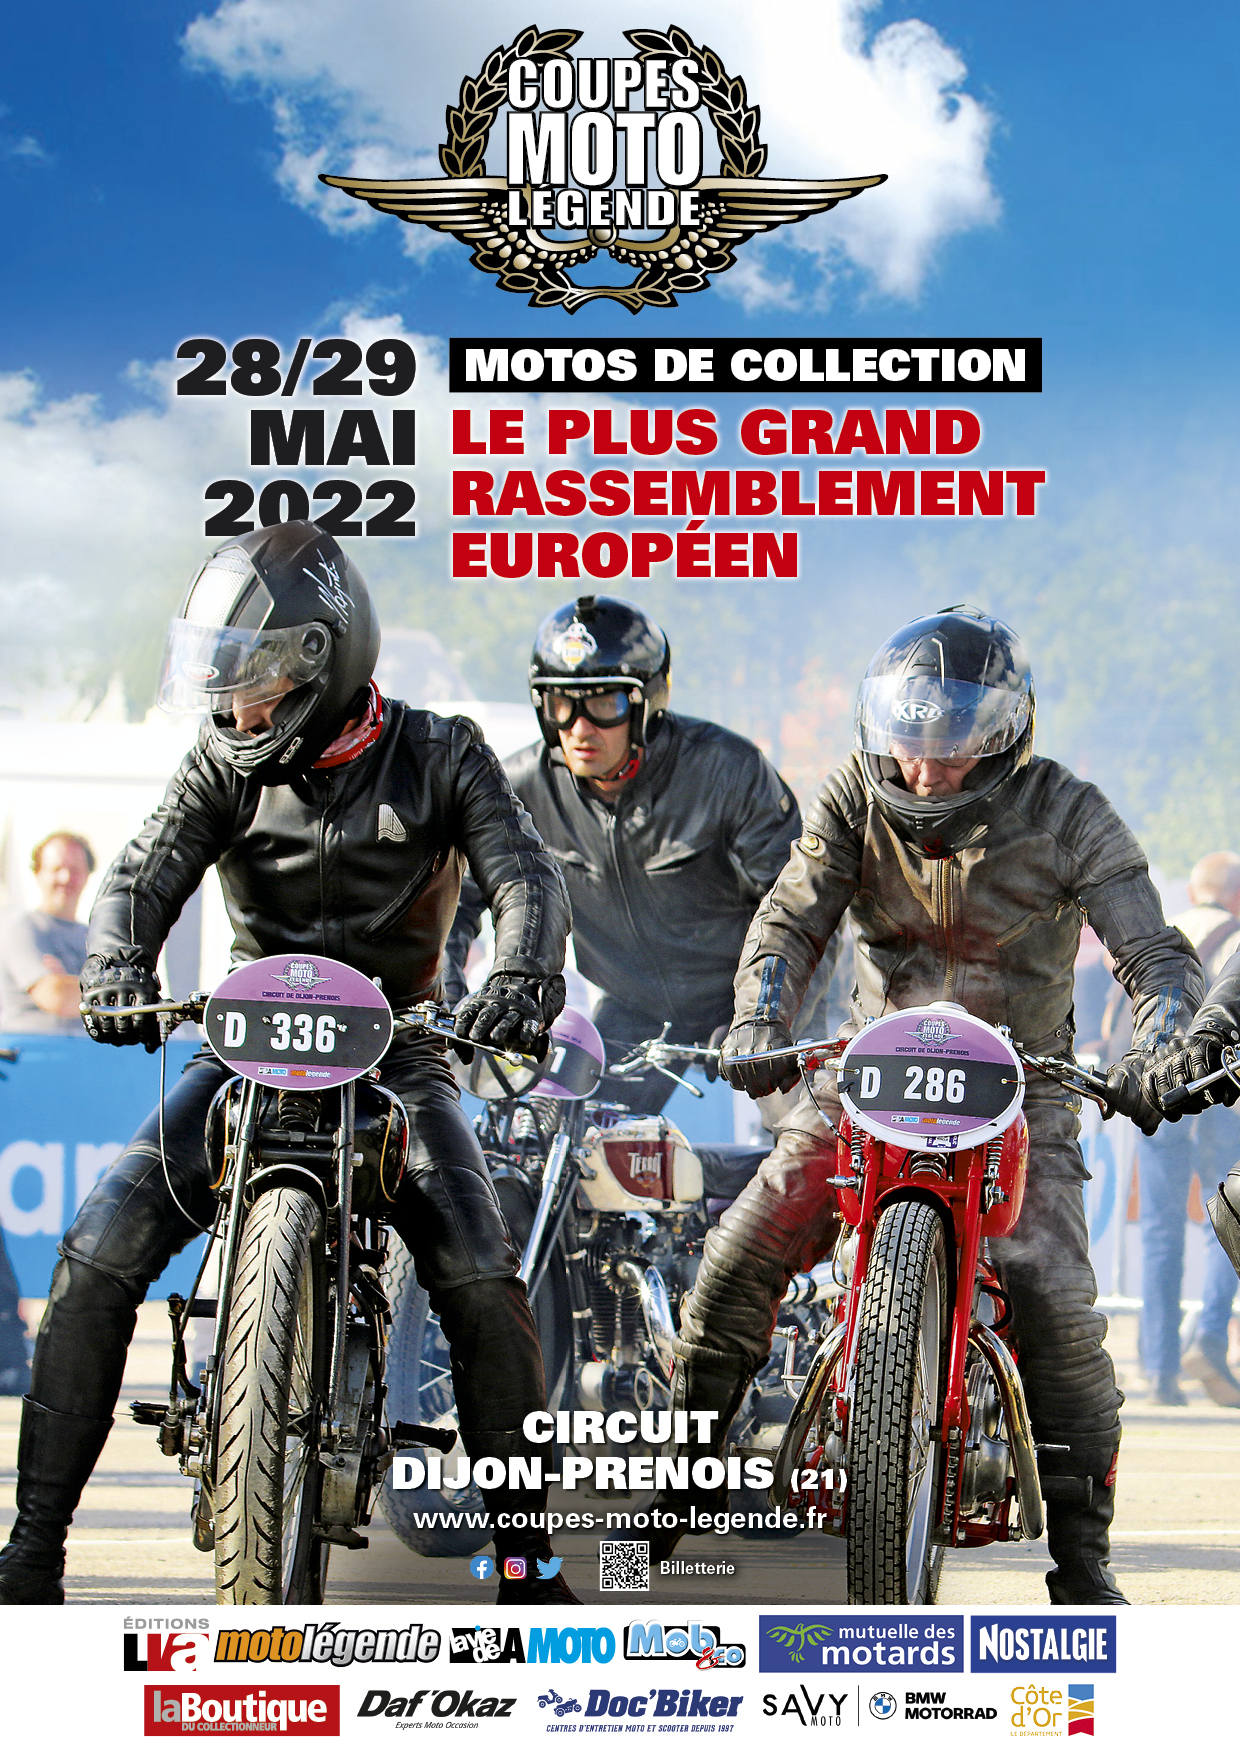 Les Coupes Moto Légende les 28 et 29 mai 2022 sur le circuit de Dijon Prenois